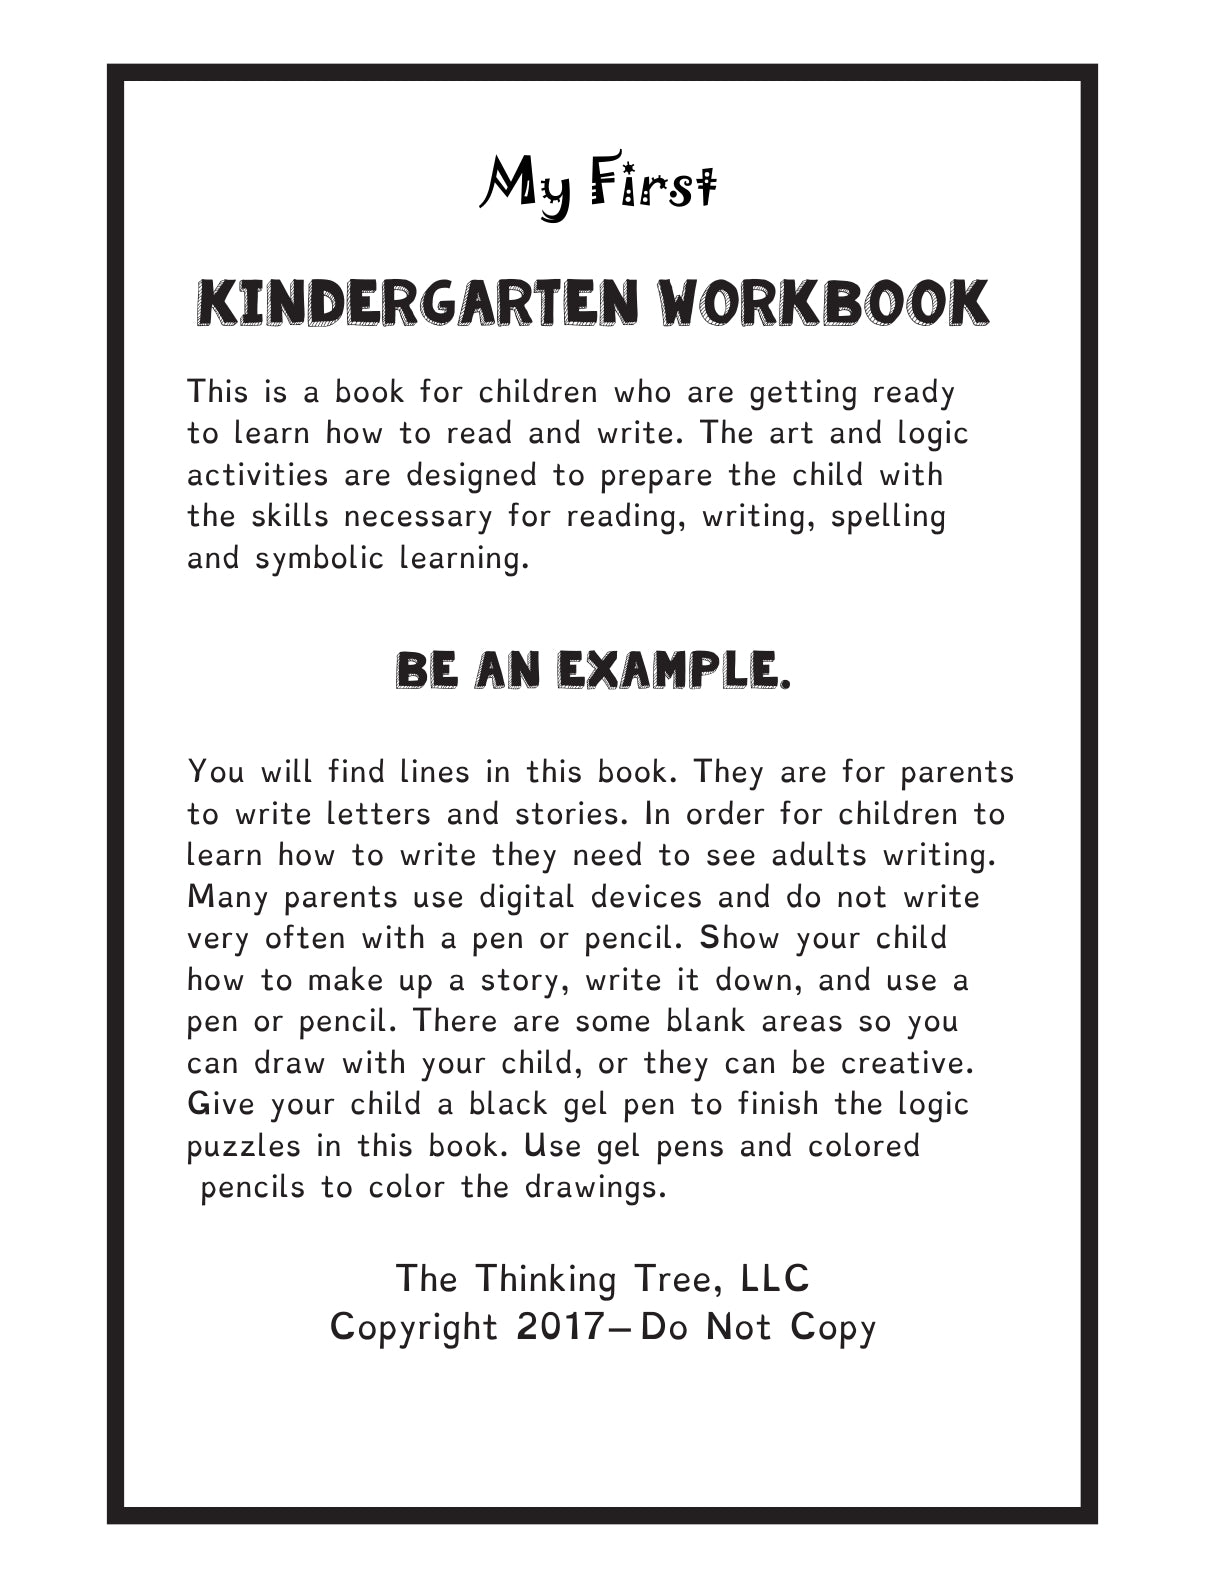 (Age 4+) My First Kindergarten Workbook